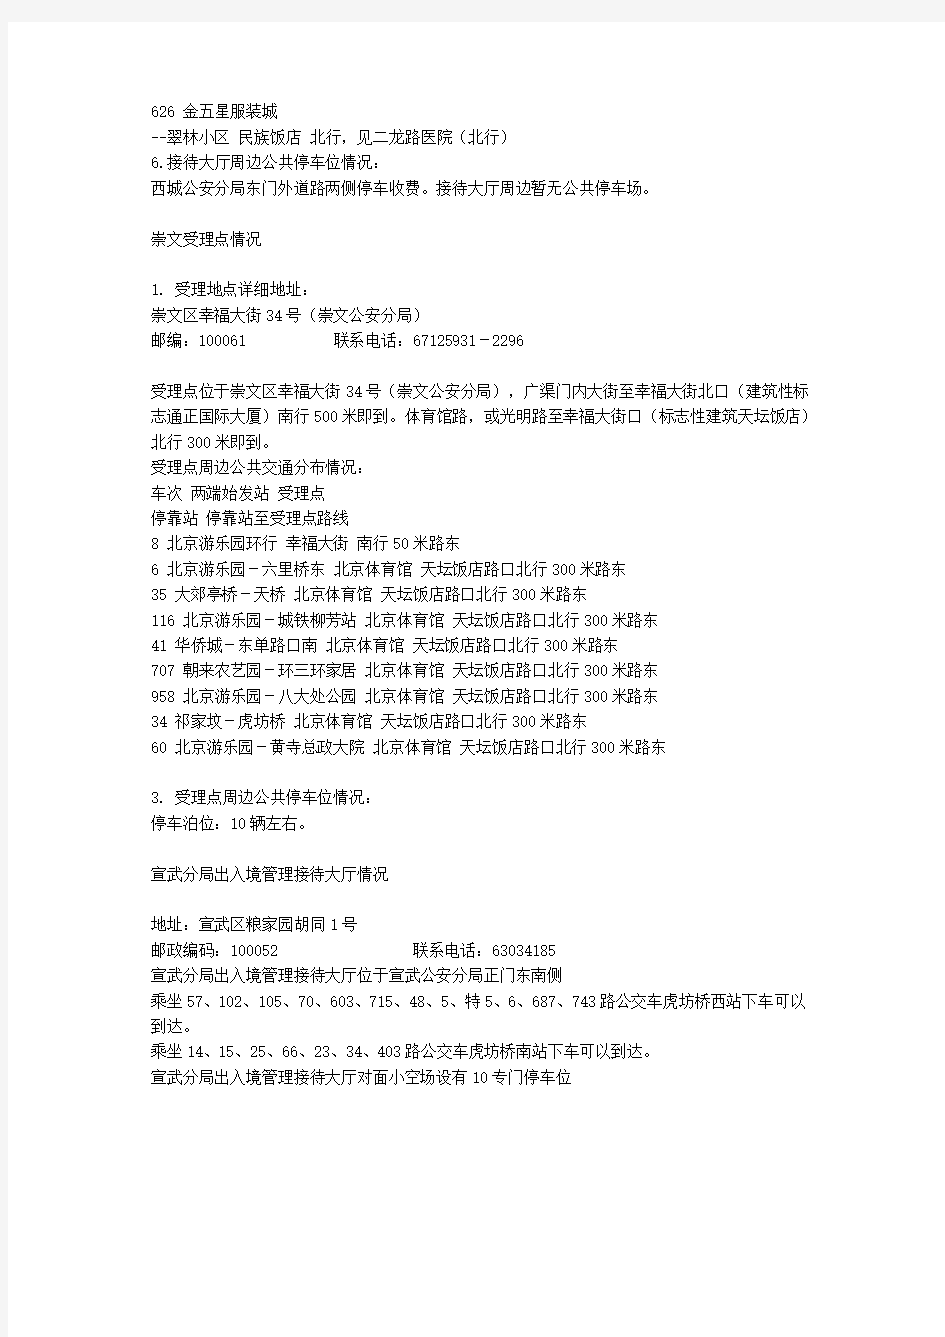 北京办理护照和港澳通行证的地址和电话(详细)